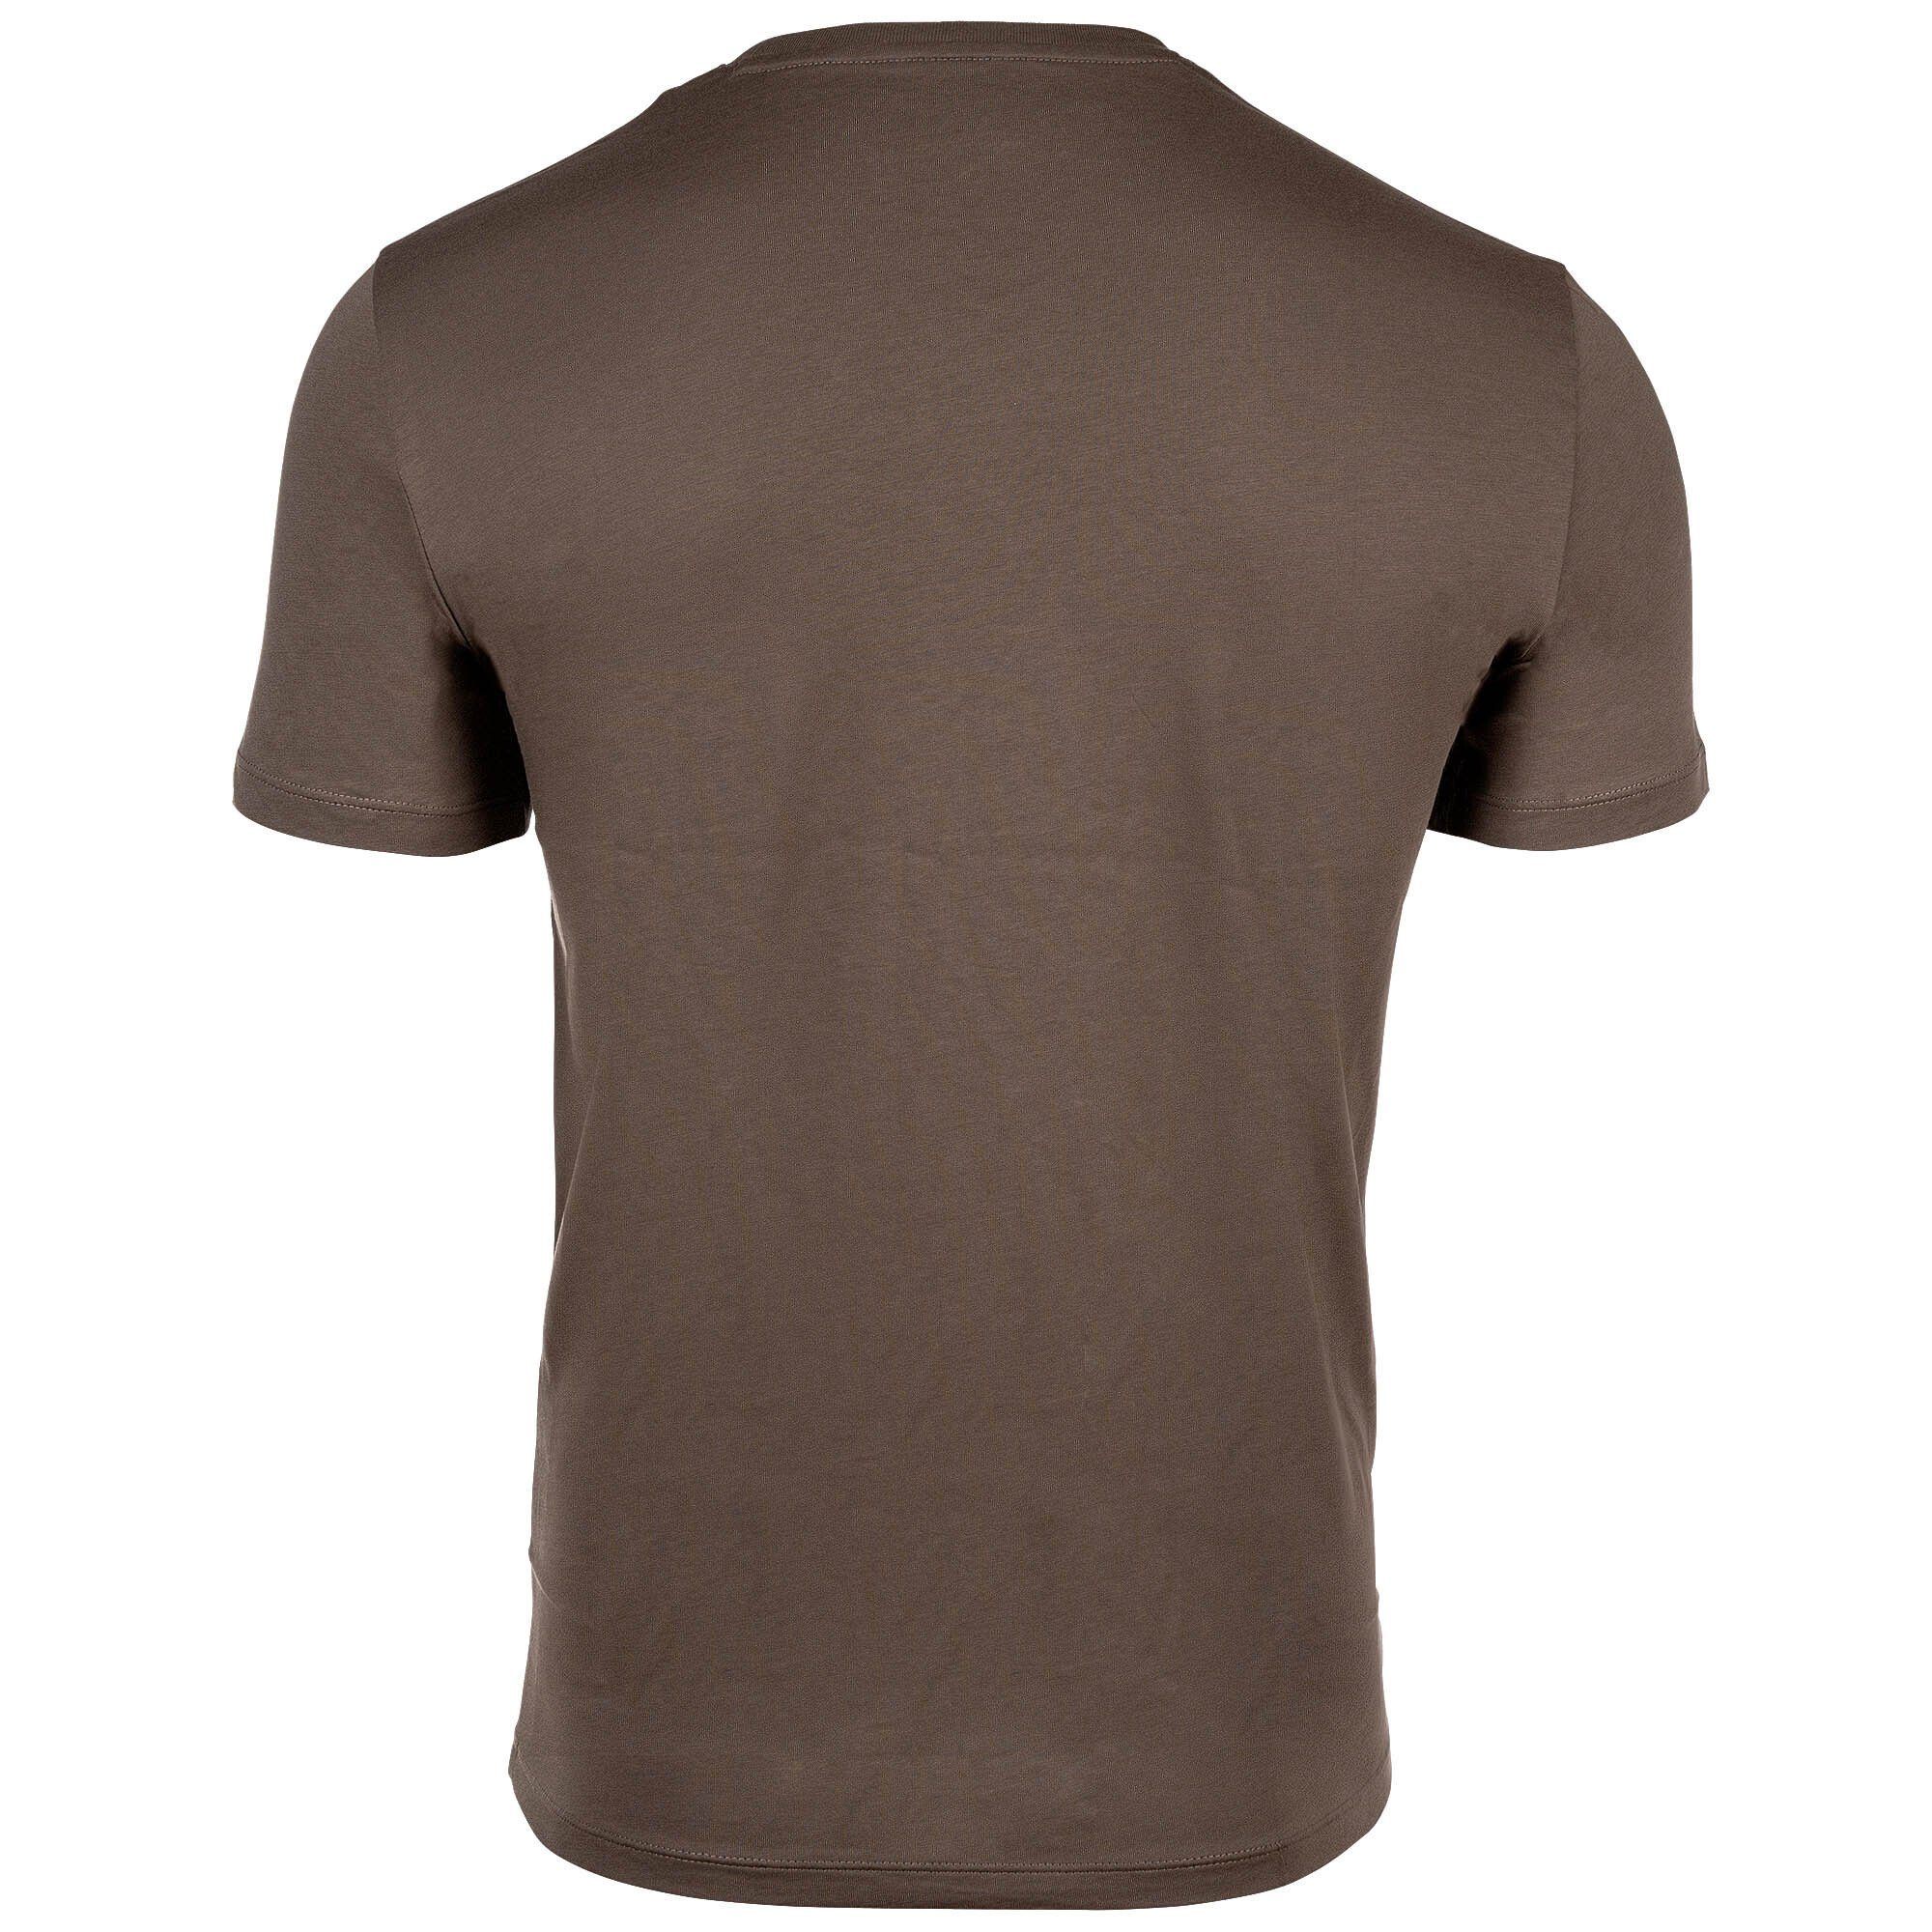 EXCHANGE - Khaki Rundhals, T-Shirt Schriftzug, ARMANI Cotton Herren T-Shirt